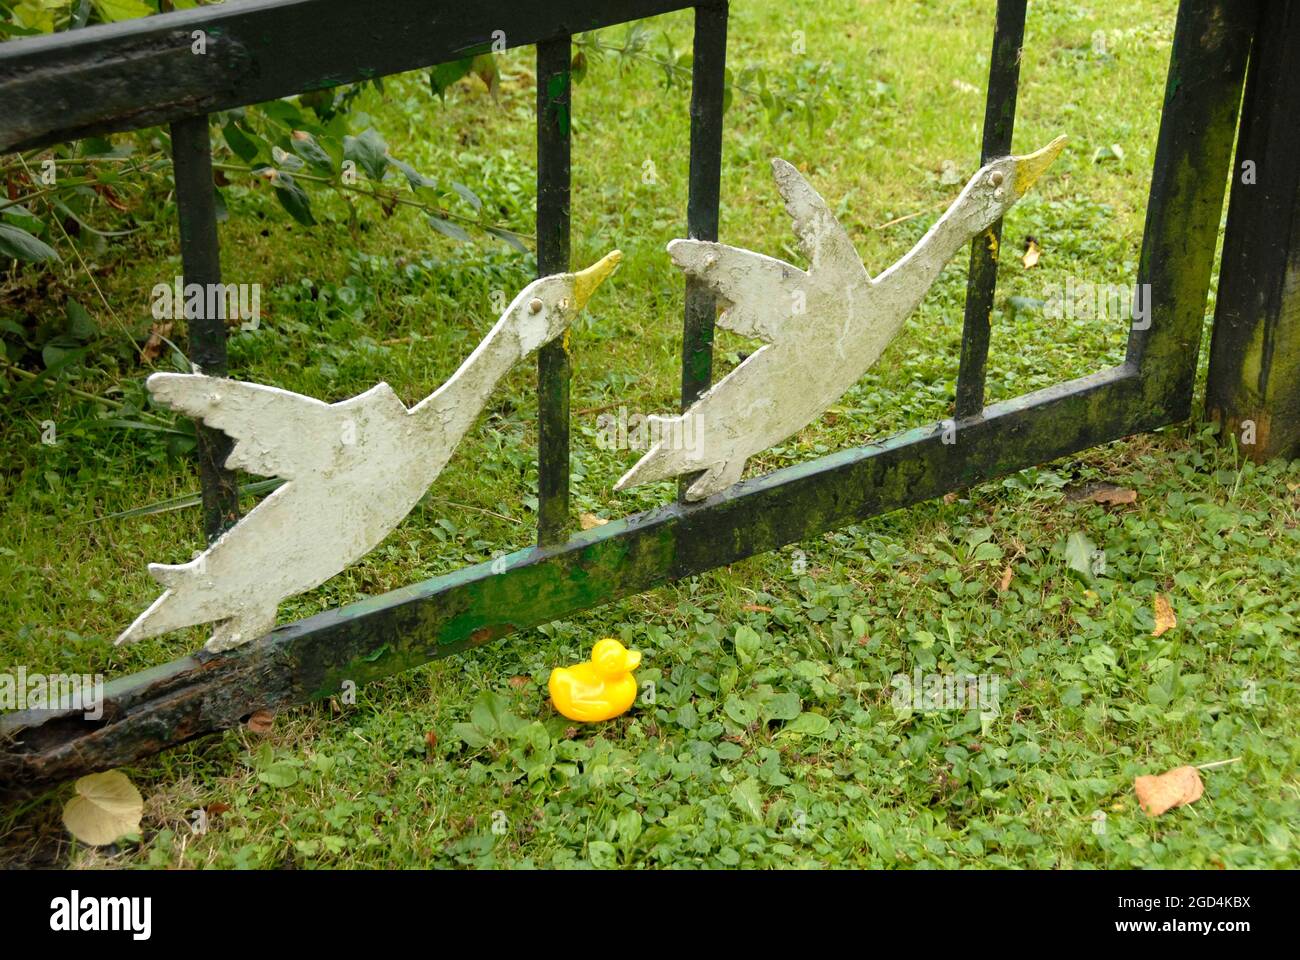 Petit canard en plastique jaune au sol à côté de la porte décoré de deux canards volants, Ludham, Norfolk, Angleterre Banque D'Images